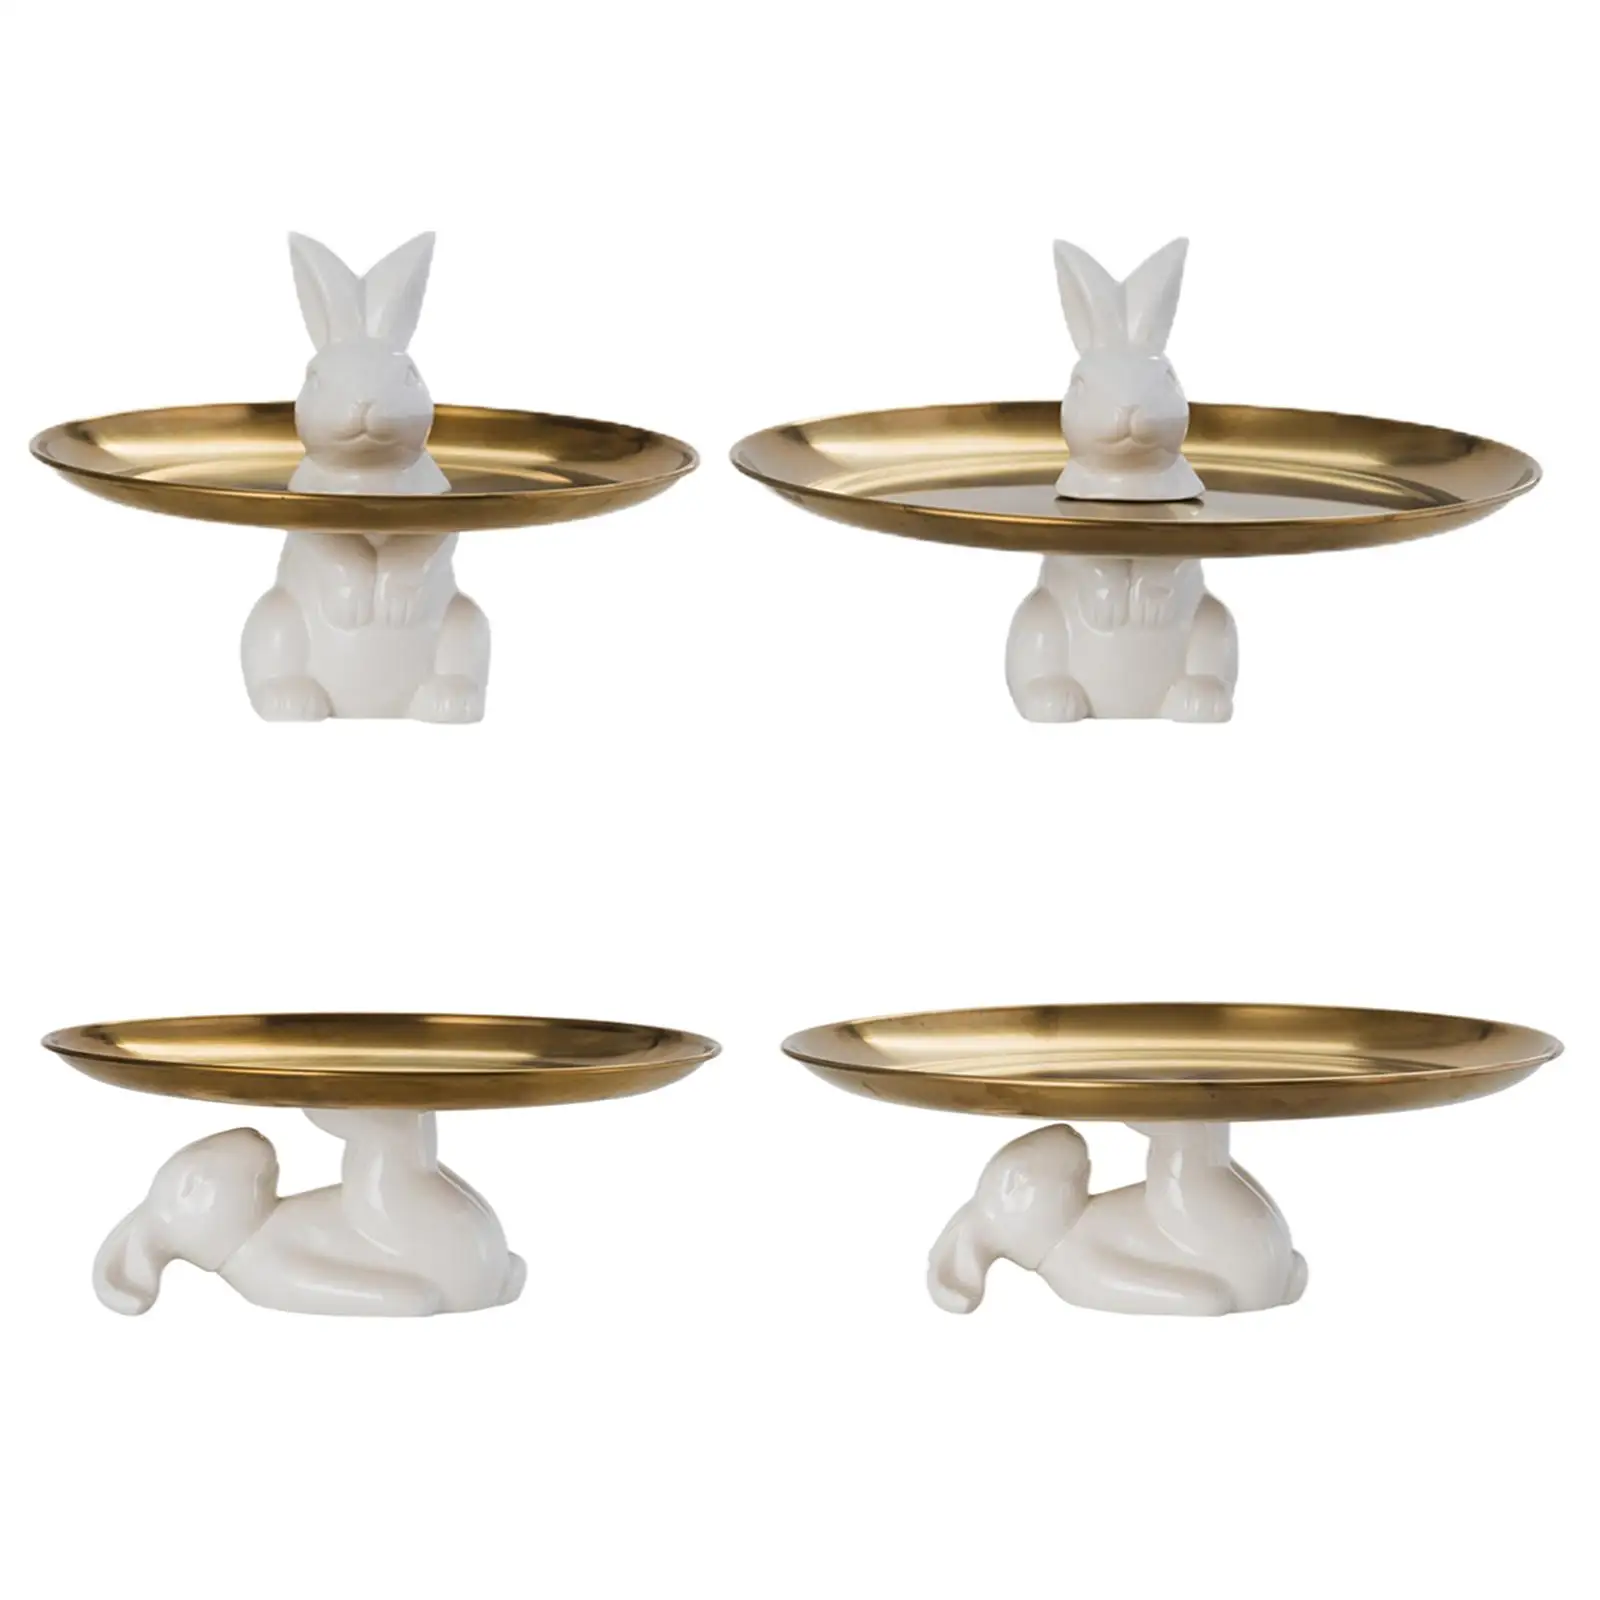 Ceramic Tray W/ Glue Decorative 8/10inch Storage W/ Base Porcelain Organizer Stand for Candy Jewelry Necklace Tableware Wedding